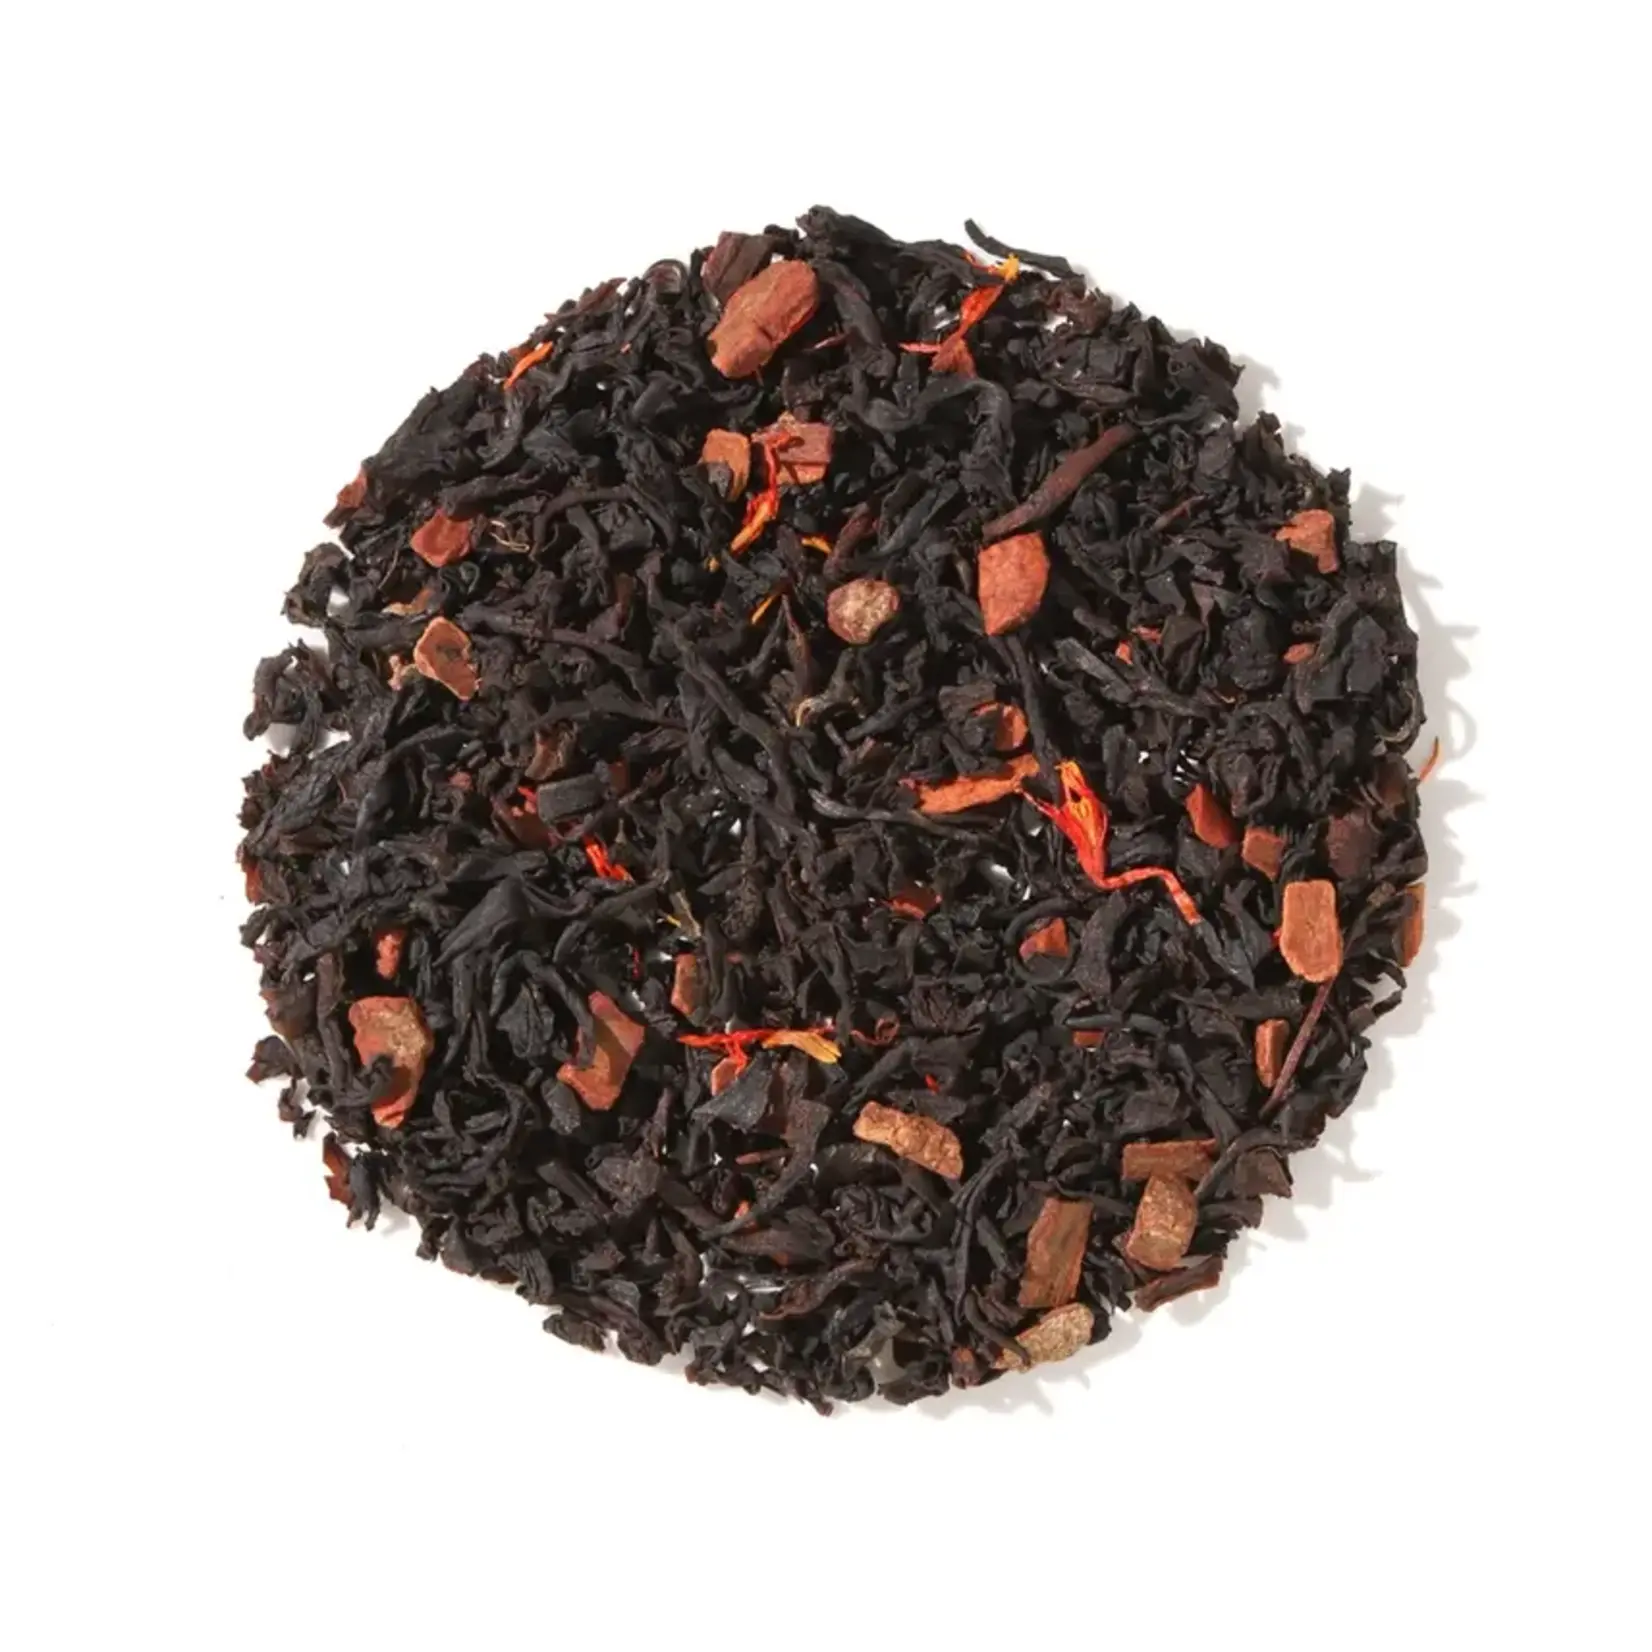 Plum Deluxe Tea Porch Sippin' Pecan Praline Black Tea